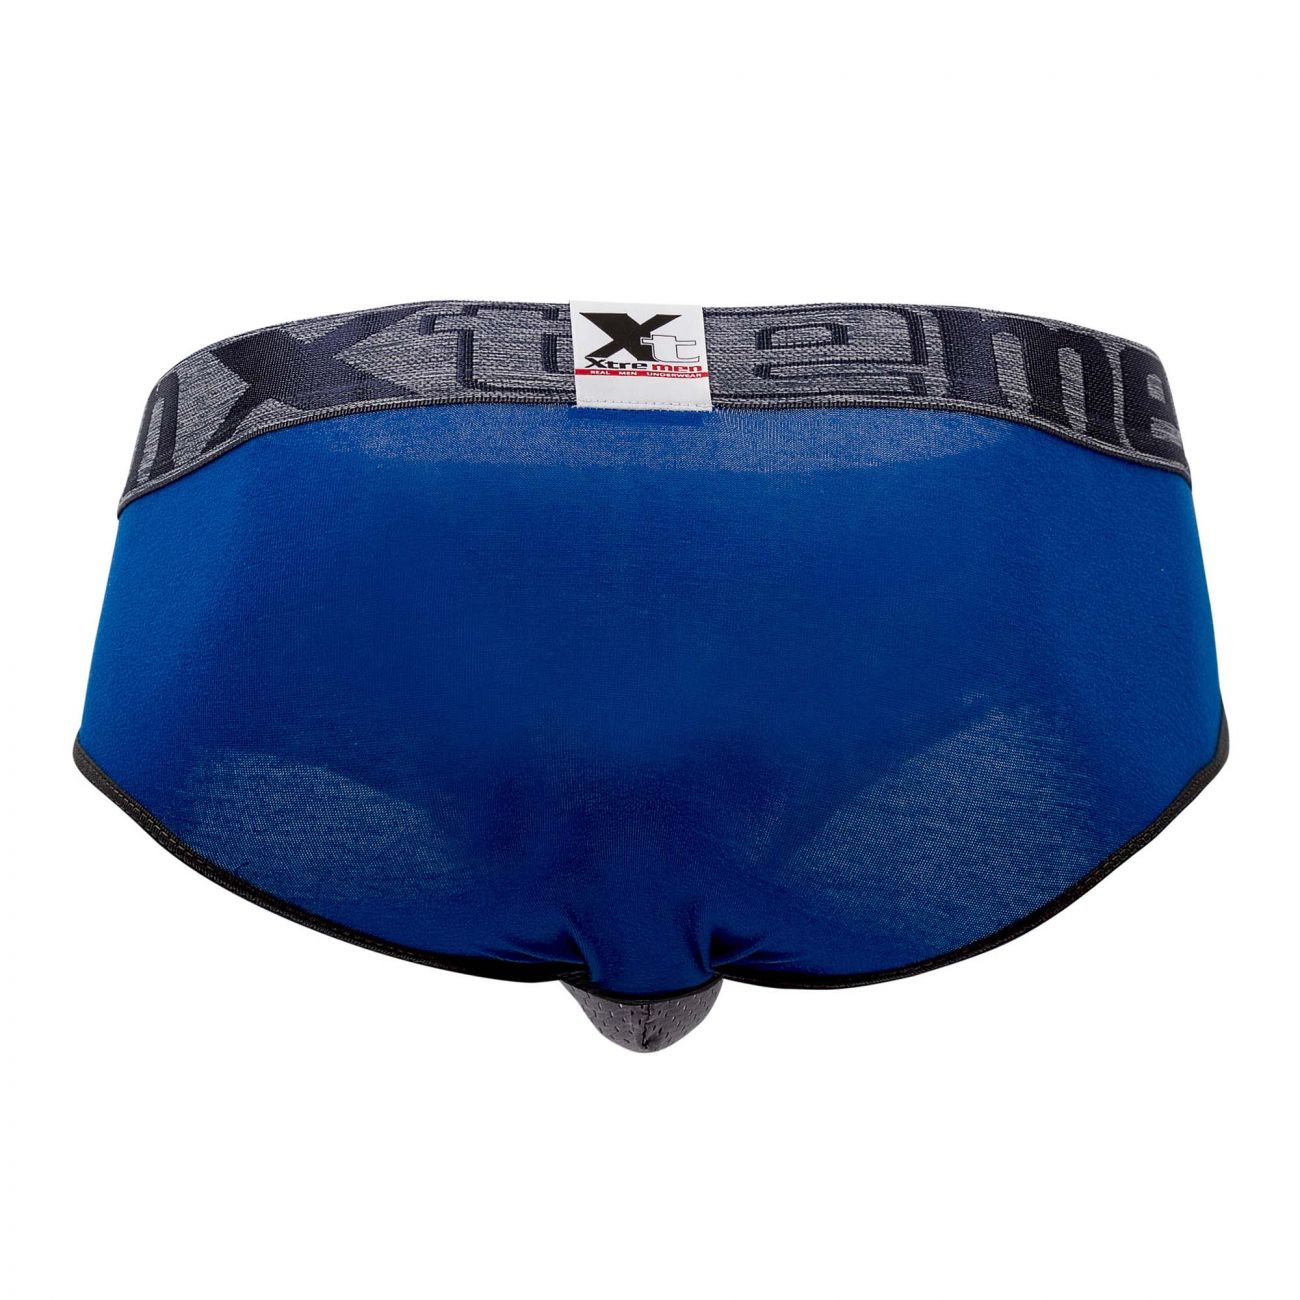 Mens Underwear: Xtremen 91055 Big Pouch Briefs | eBay